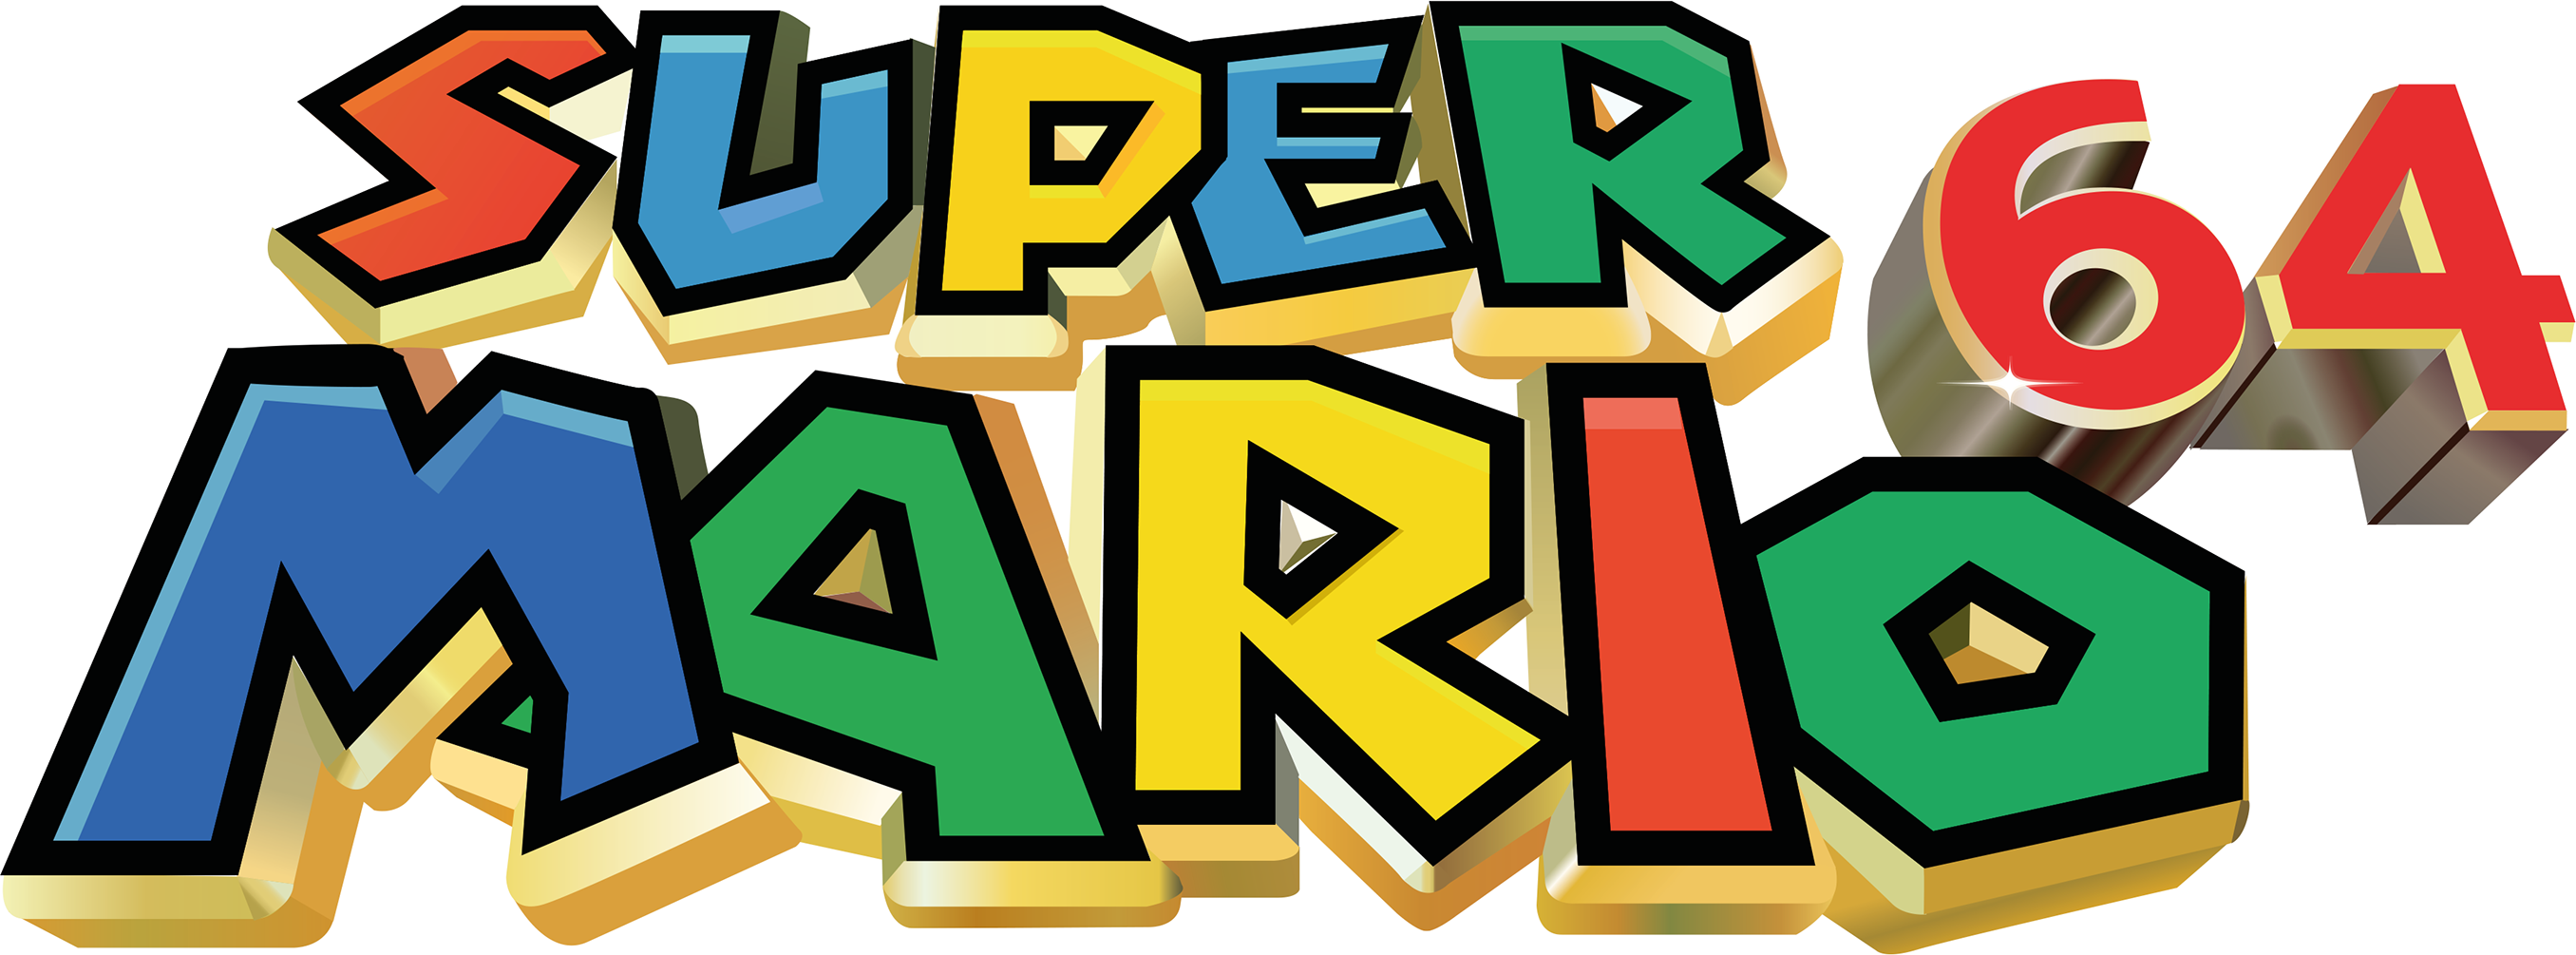 Super Mario 64 Logo Transparent Background